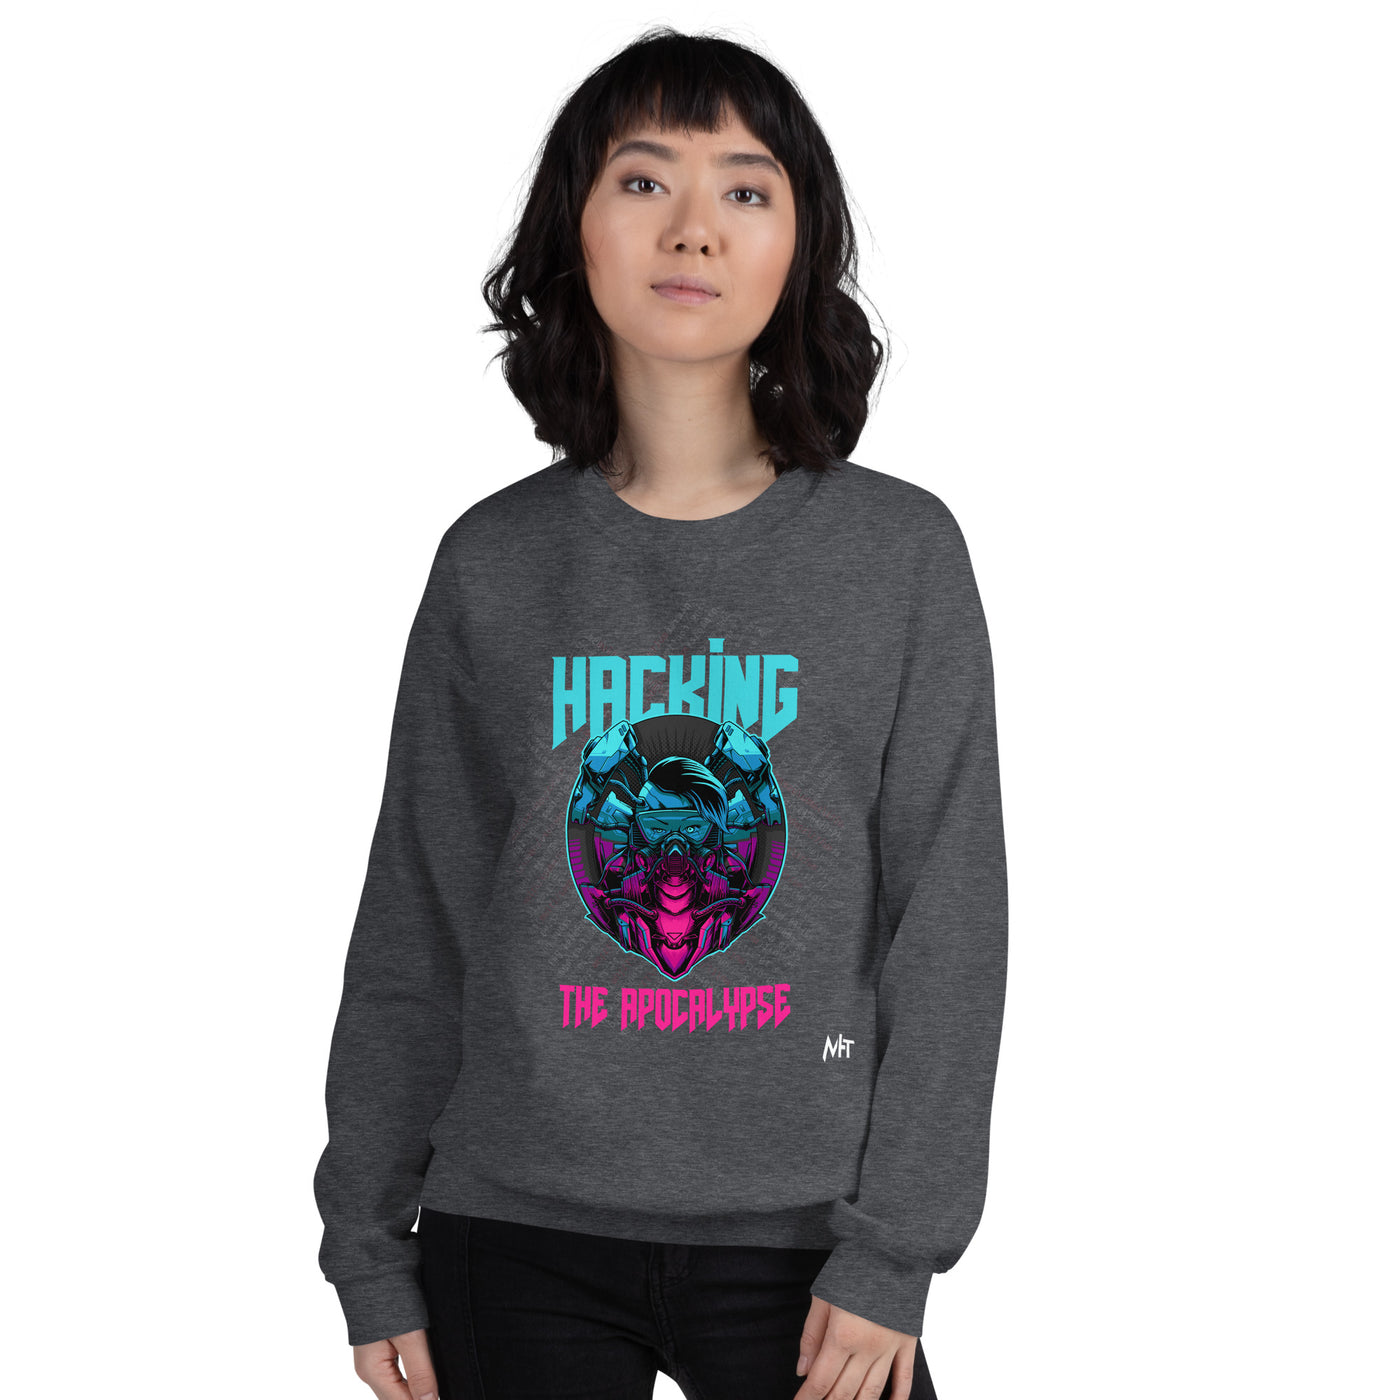 Hacking the apocalypse V2 - Unisex Sweatshirt